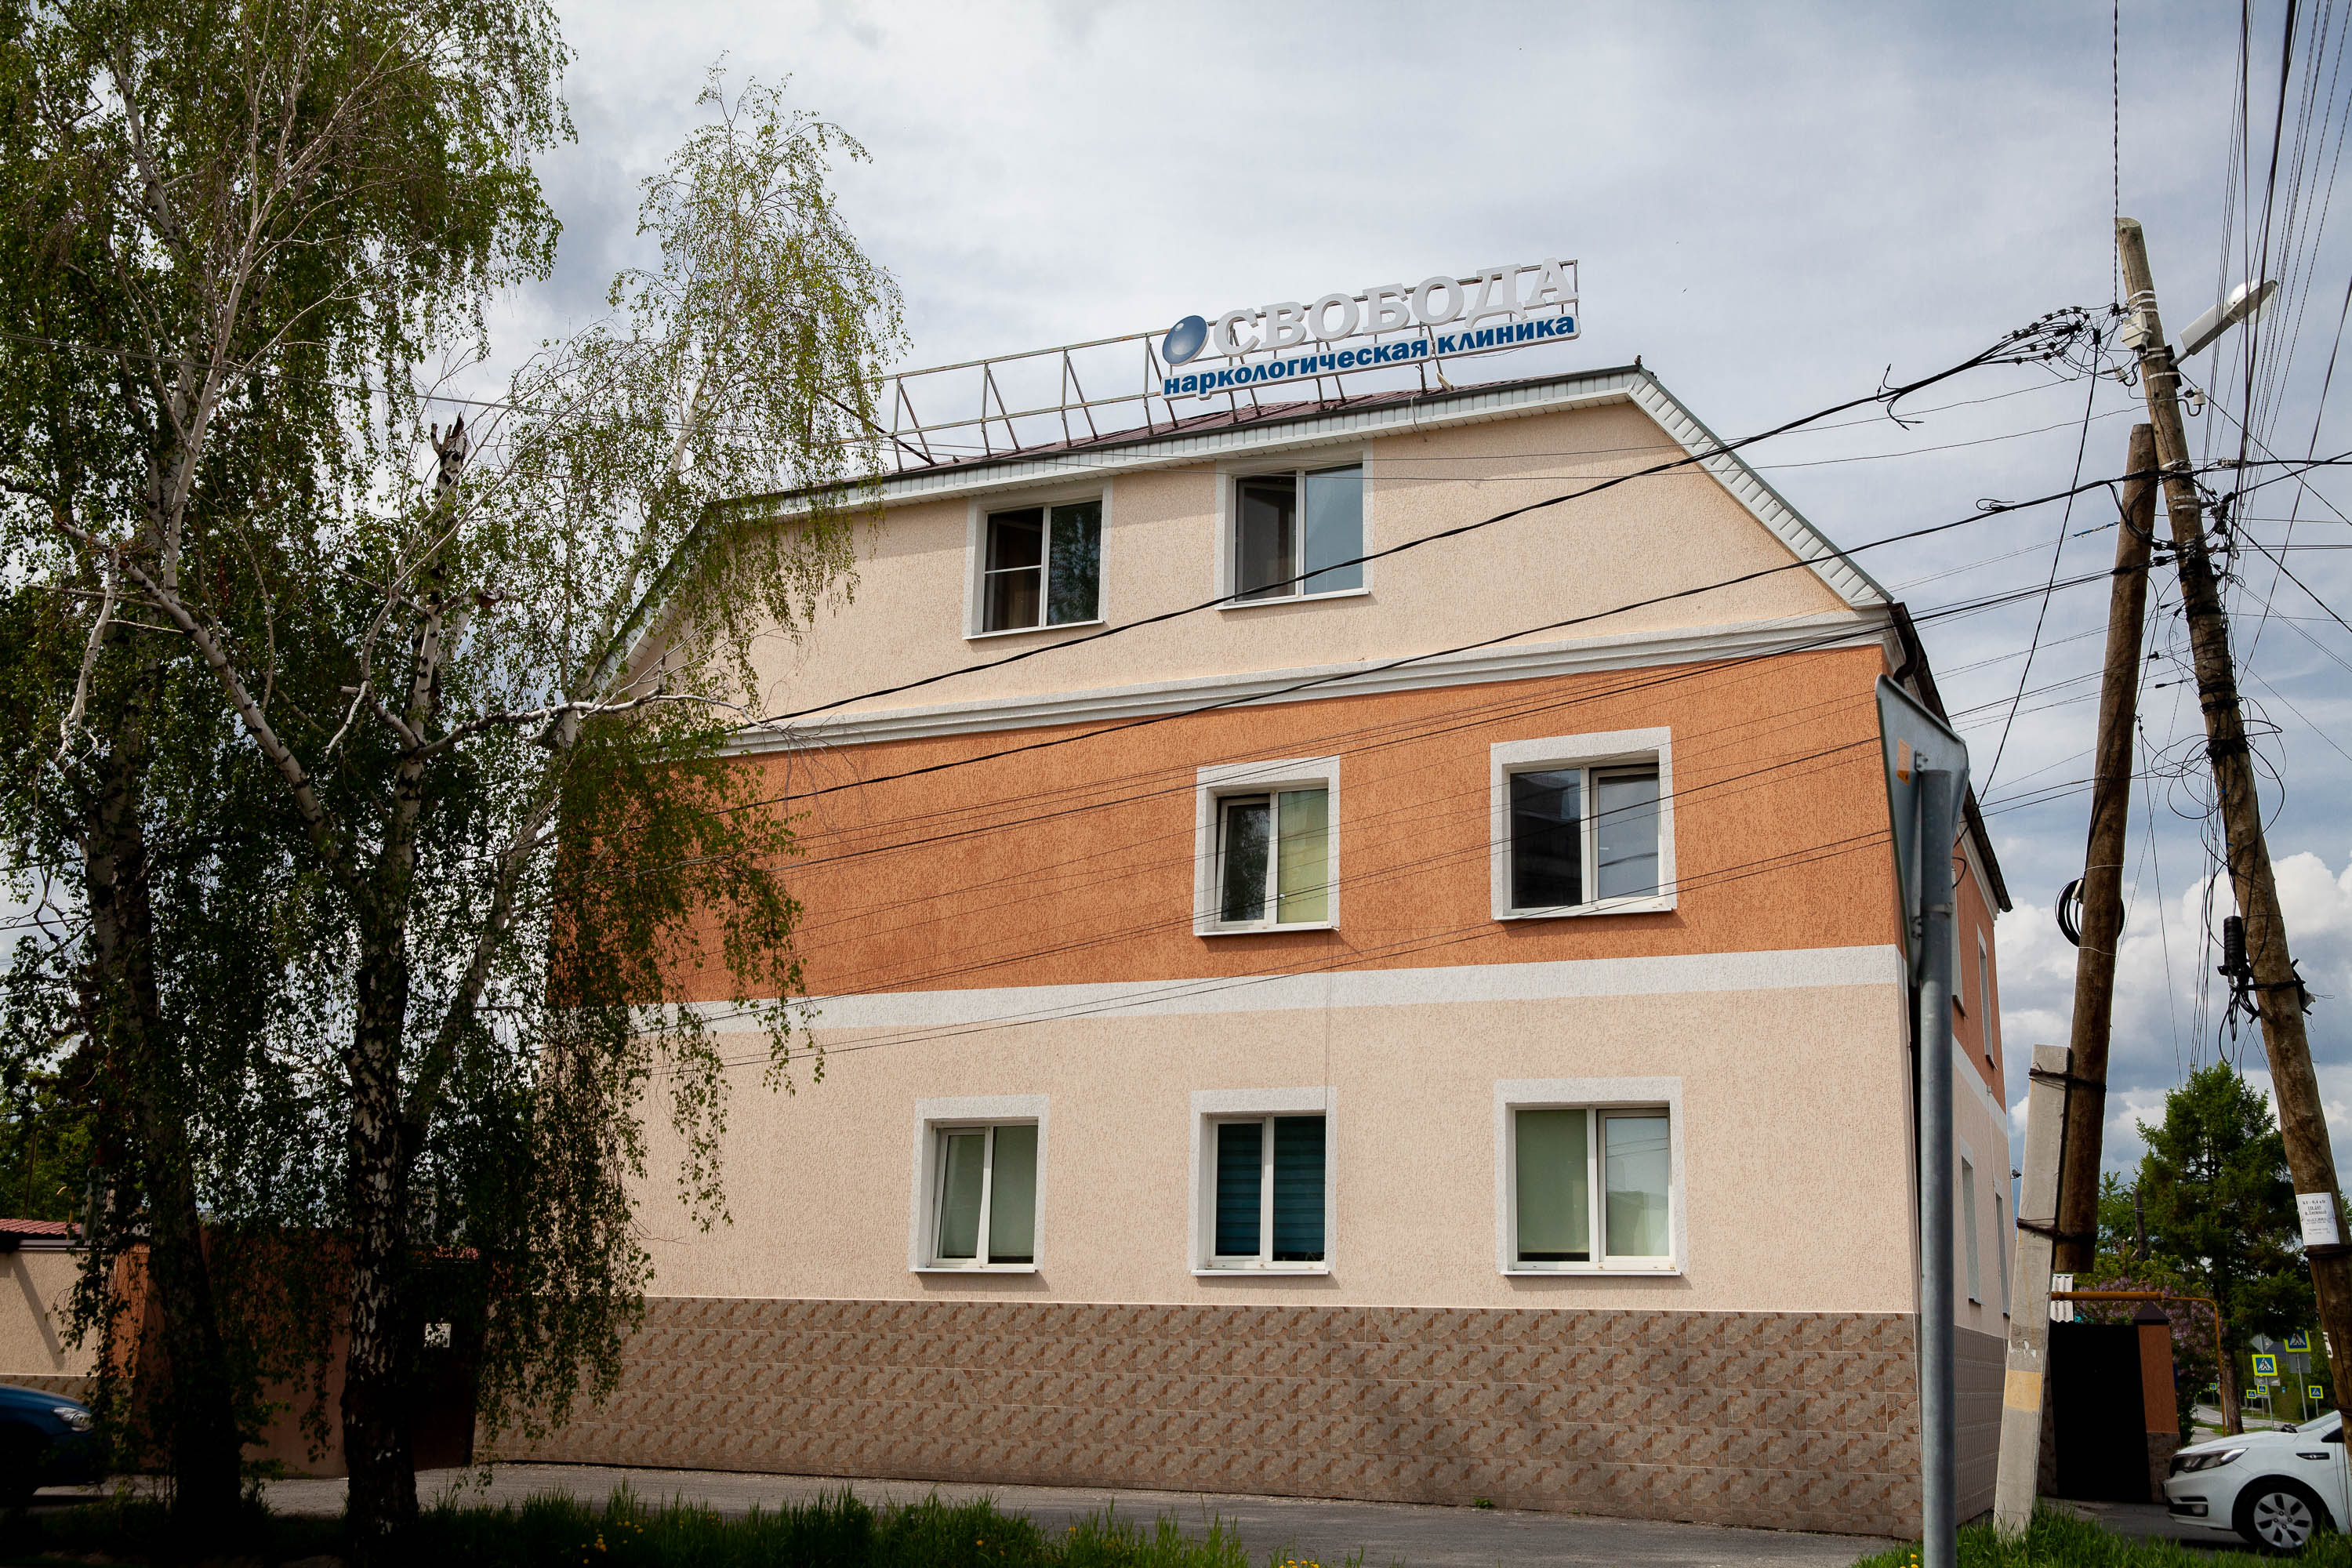 Наркологическая клиника «Свобода» — это филиал известной екатеринбургской наркологии, которая помогла справиться с зависимостями уже многим уральцам